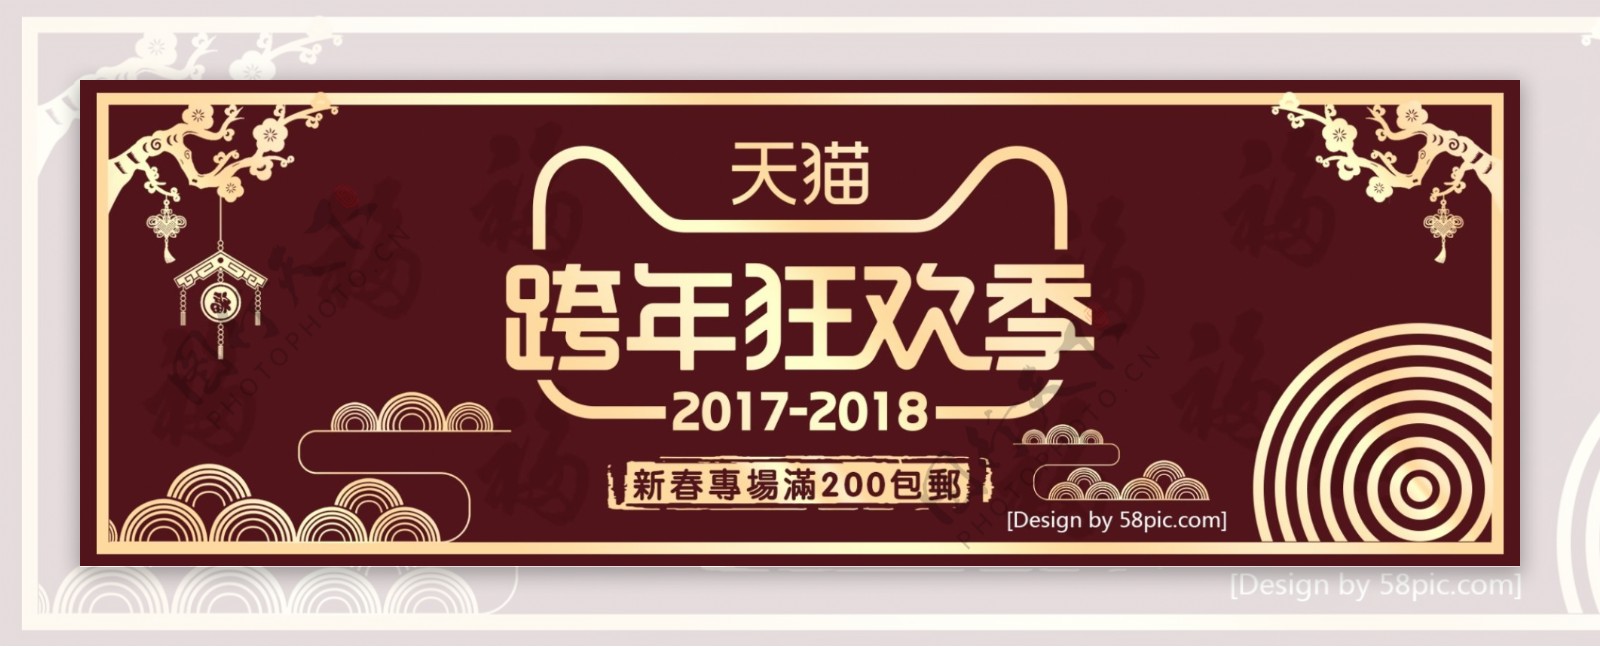 蓝色时尚跨年狂欢季淘宝海报banner